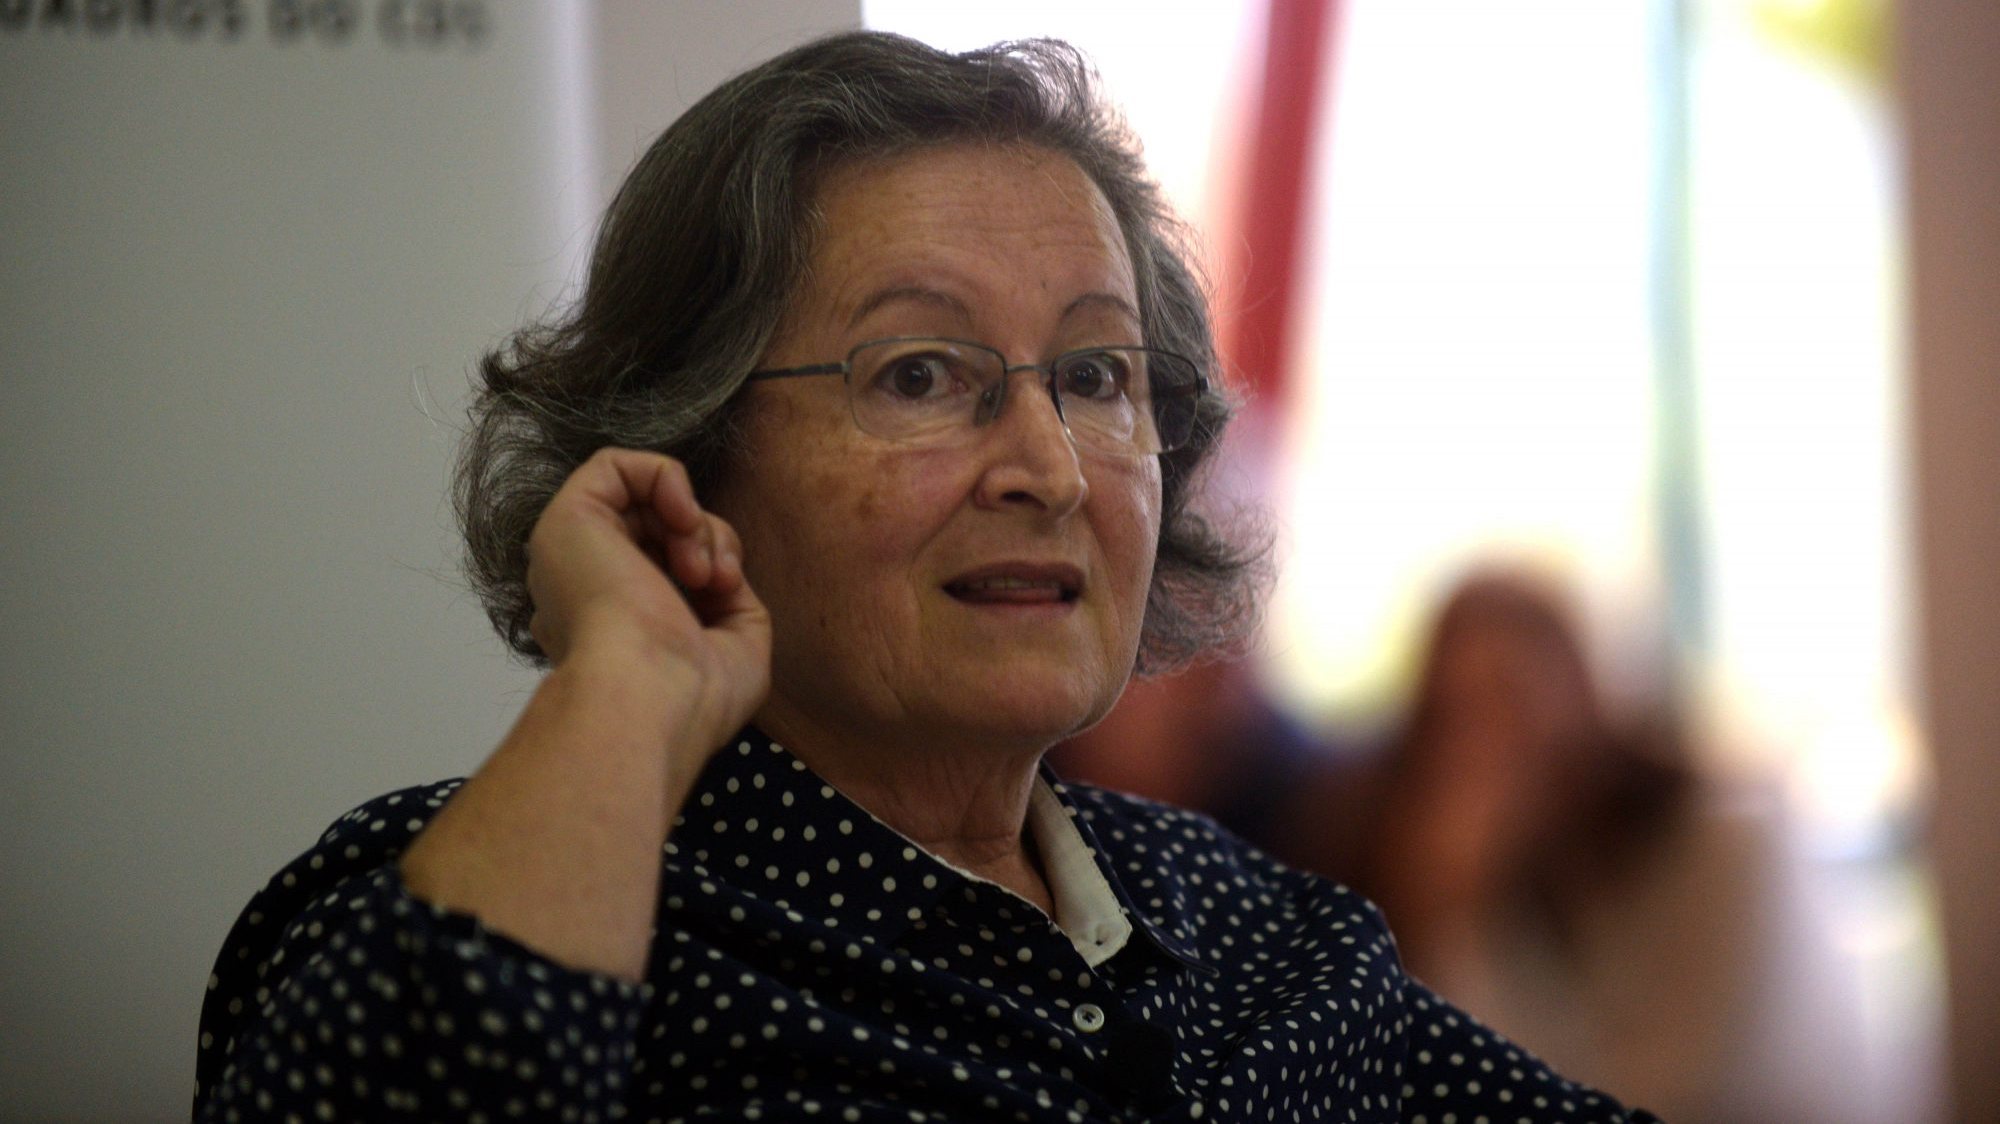 Maria de Lurdes Rodrigues ocupou a pasta da Educação entre 2005 e 2009, no Governo de José Sócrates